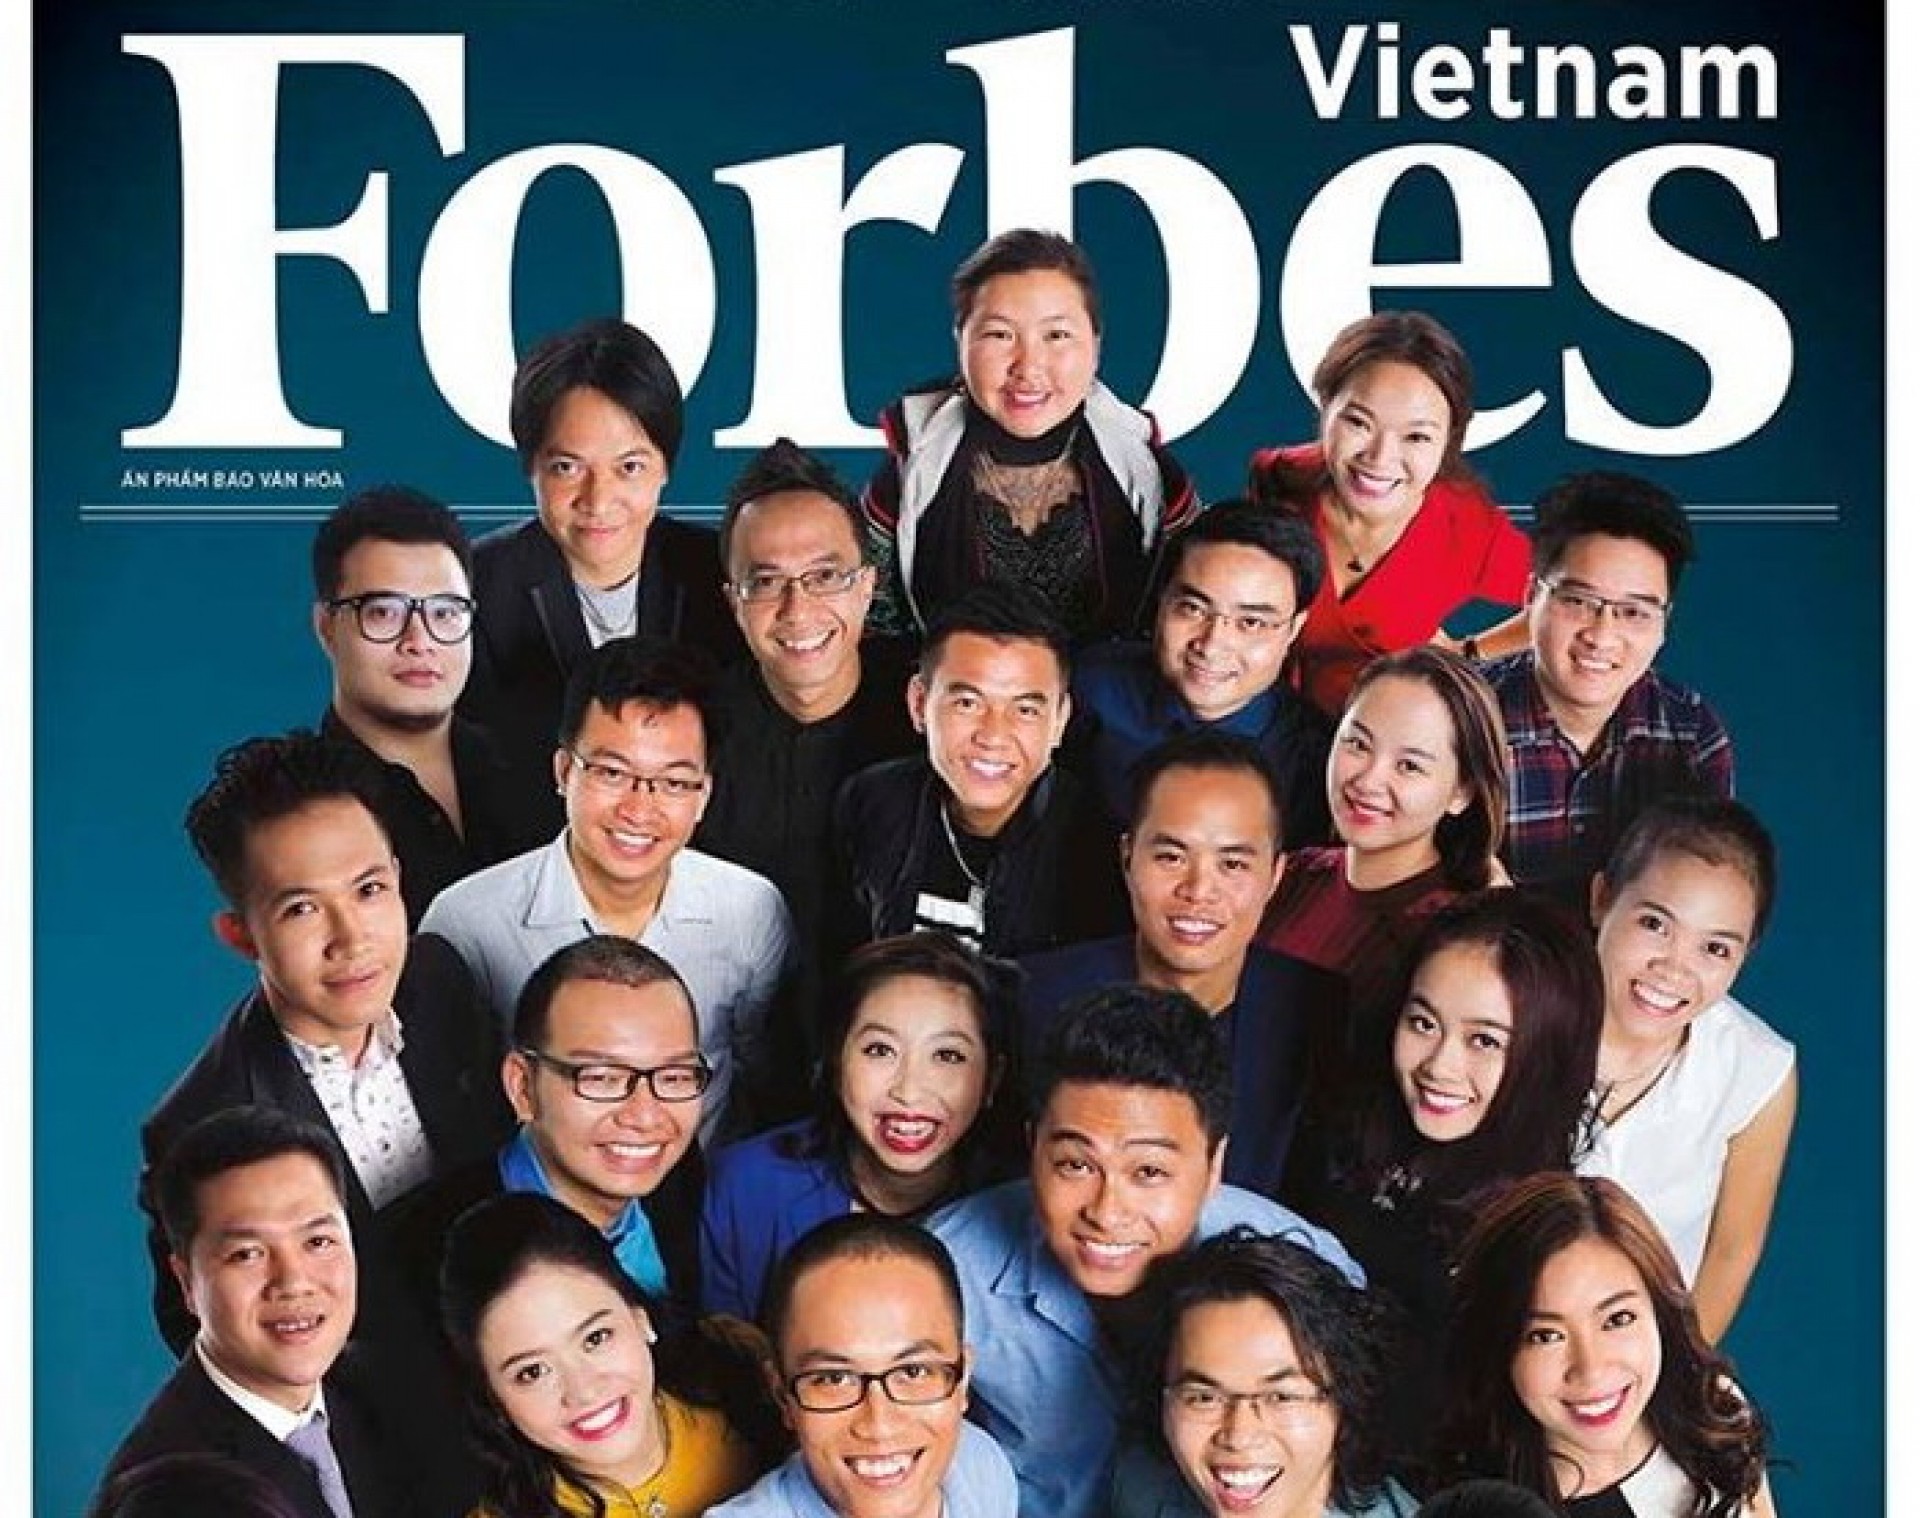 Hội nghị FORBES Việt Nam 2016 - Bất động sản: XÂY DỰNG TƯƠNG LAI